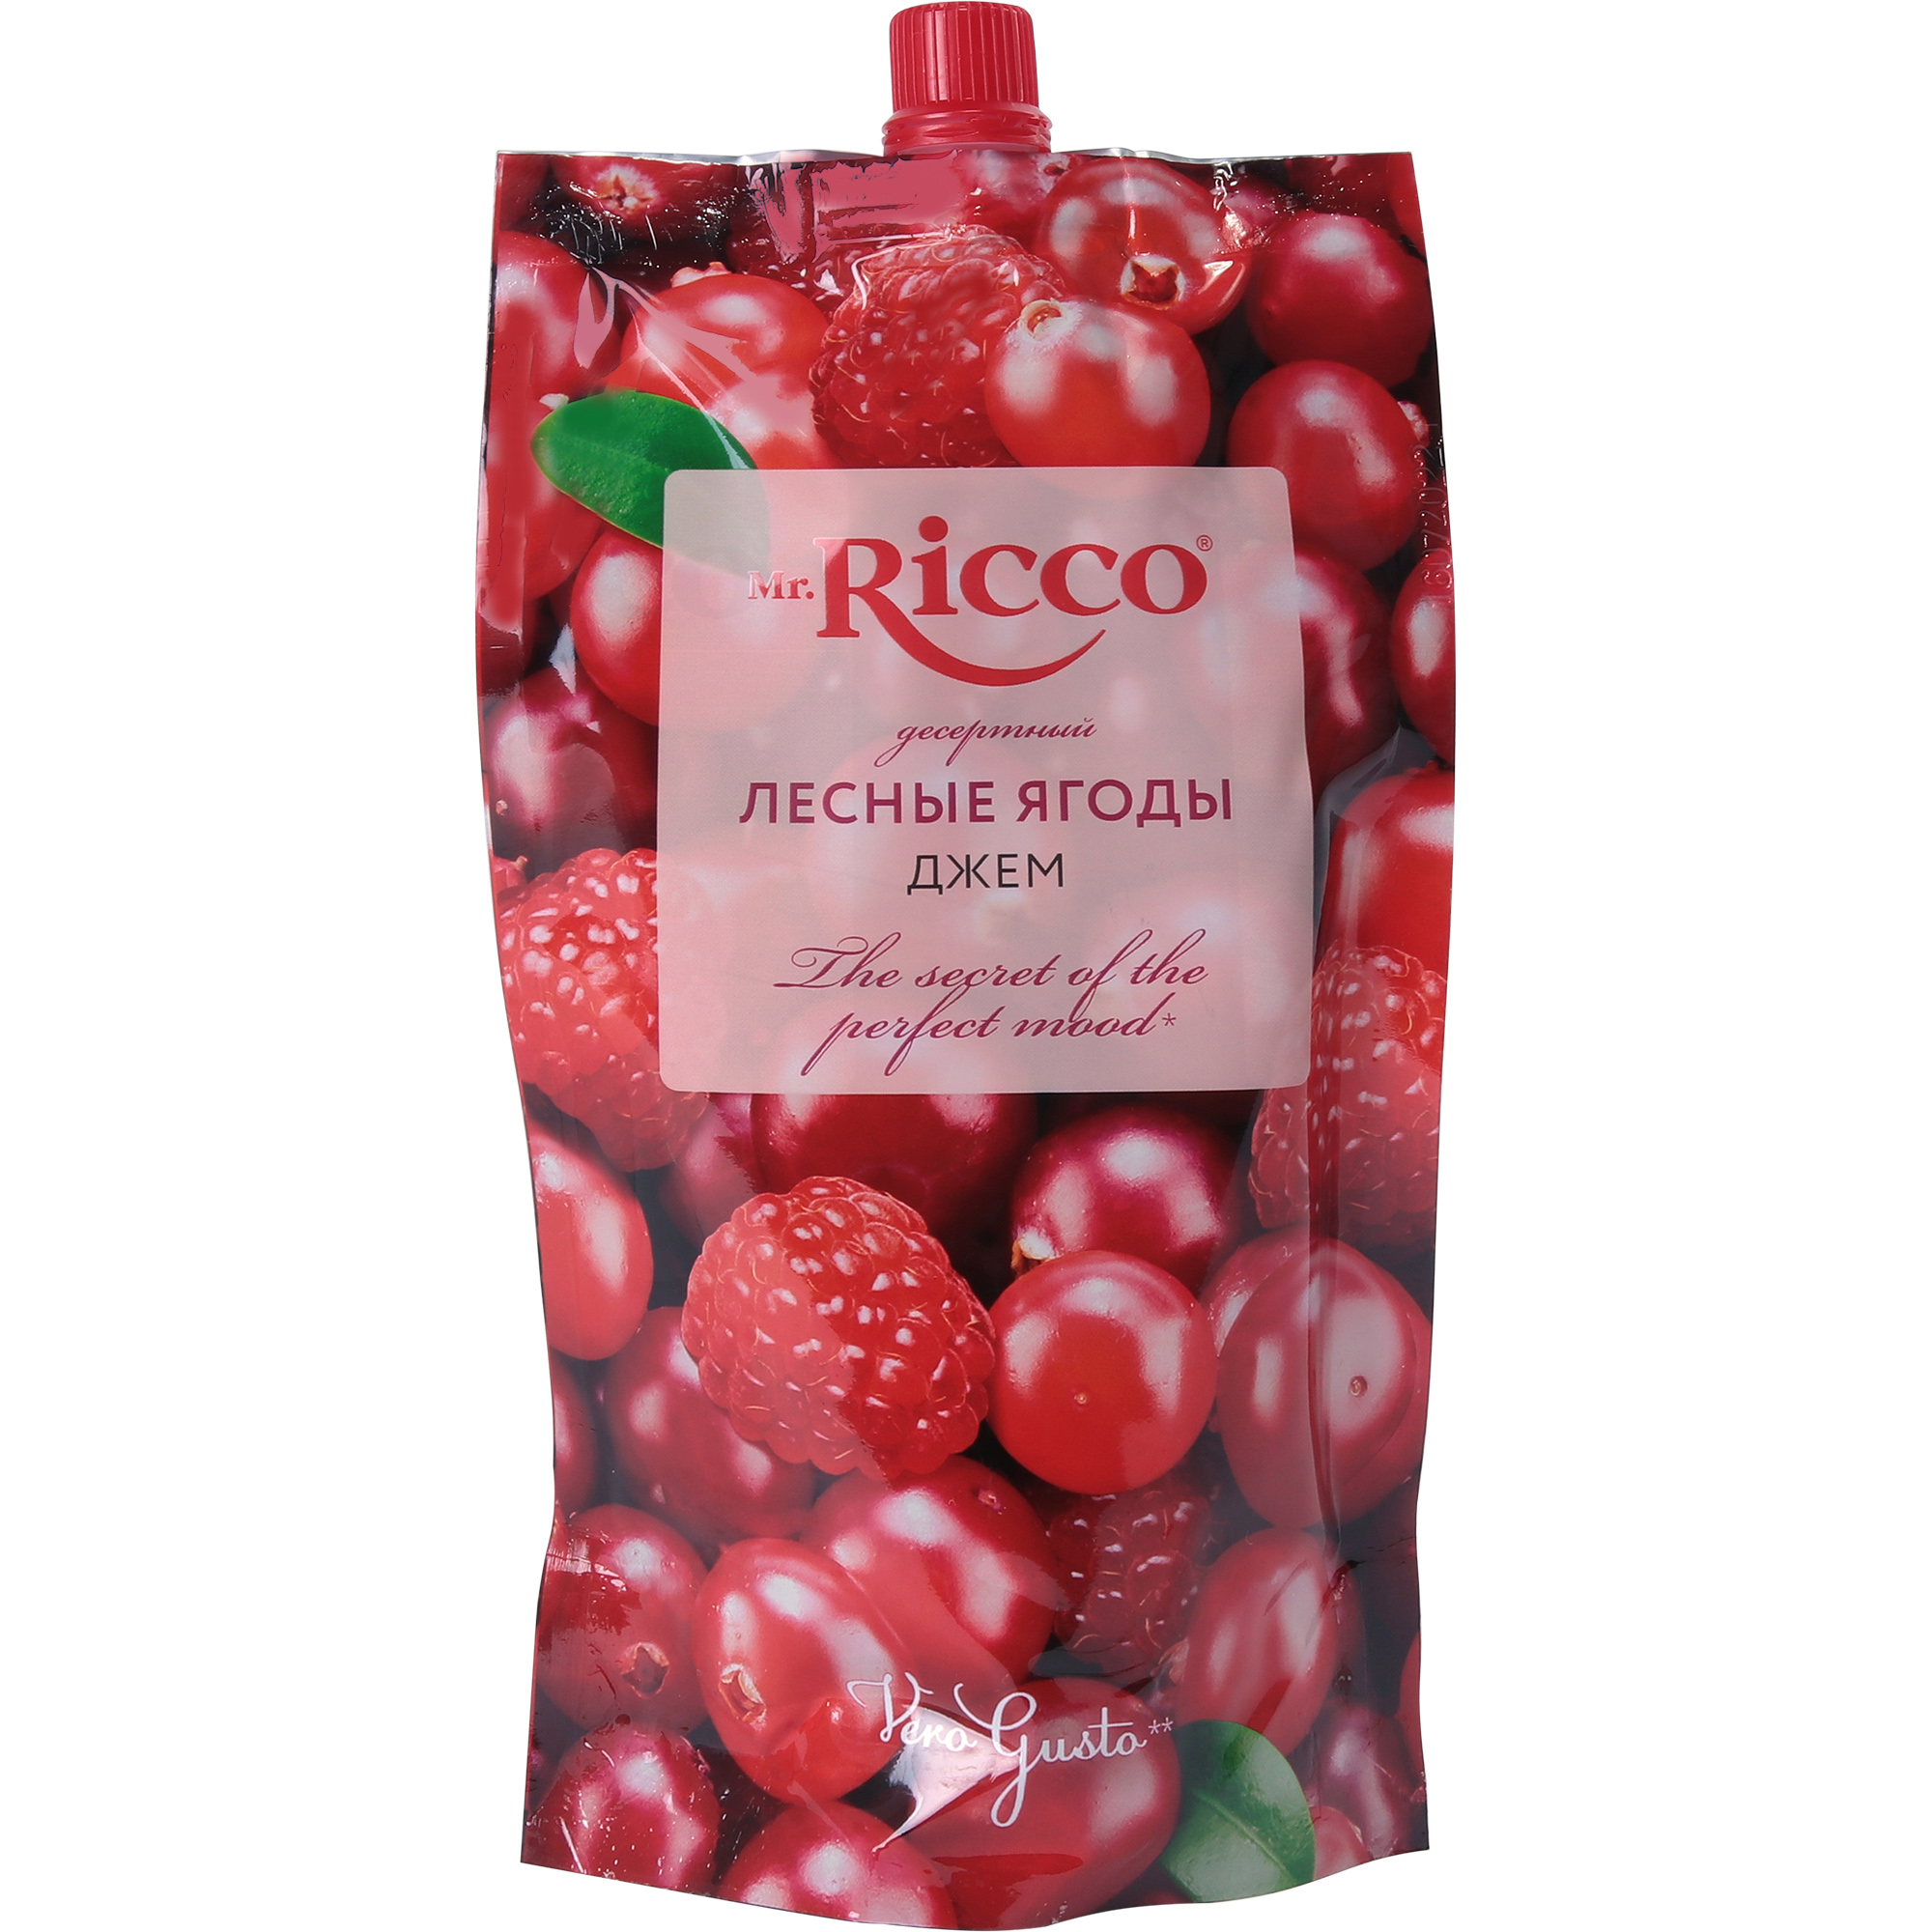 Джем Mr.Ricco лесные ягоды, 300 г джем сам бы ел черника без сахара 200 г